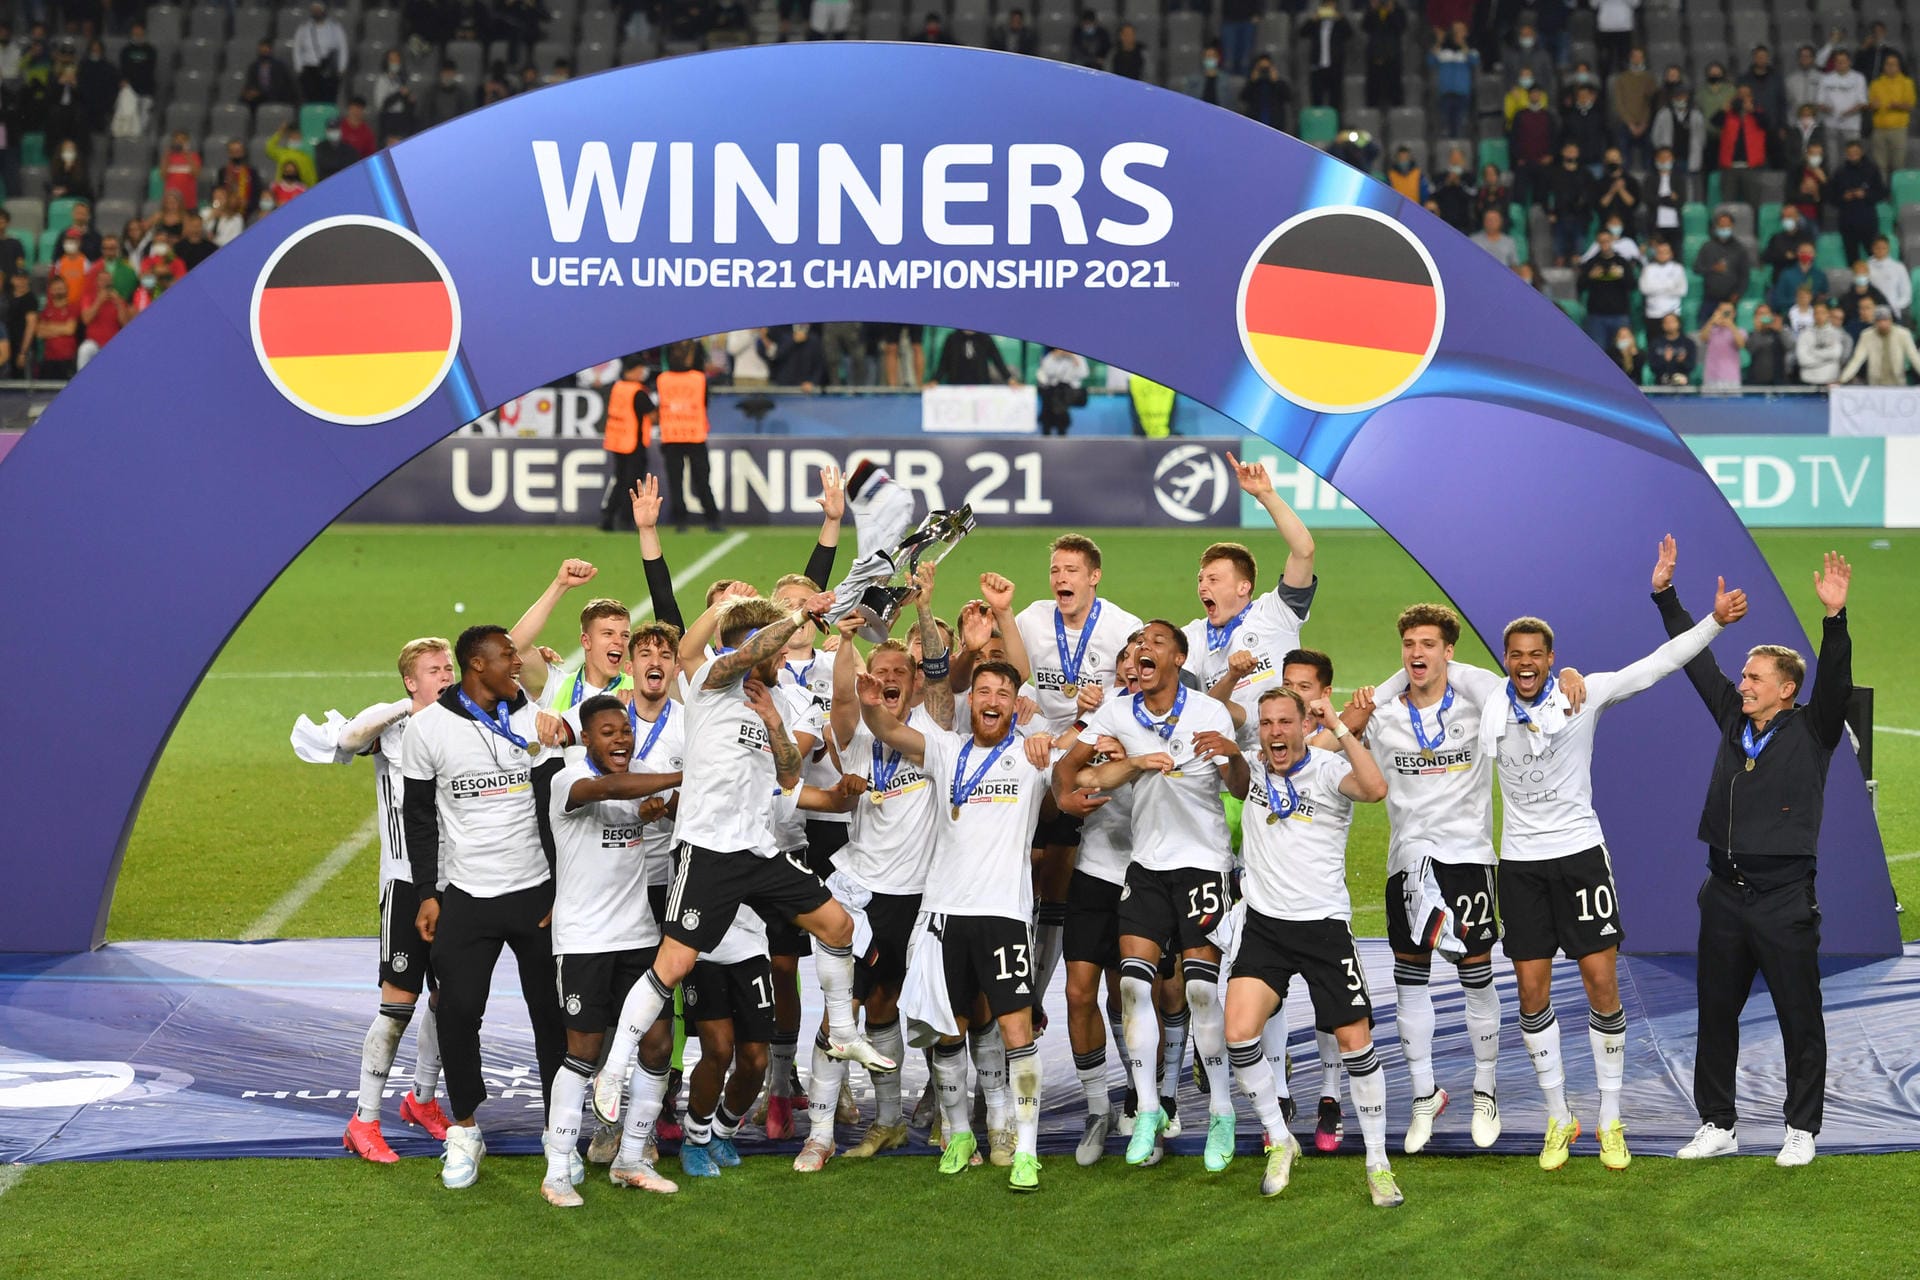 Die deutsche U21-Auswahl hat sich mit dem knappen Sieg gegen Portugal zum drittem Mal nach 2009 und 2017 zum Europameister gekrönt.